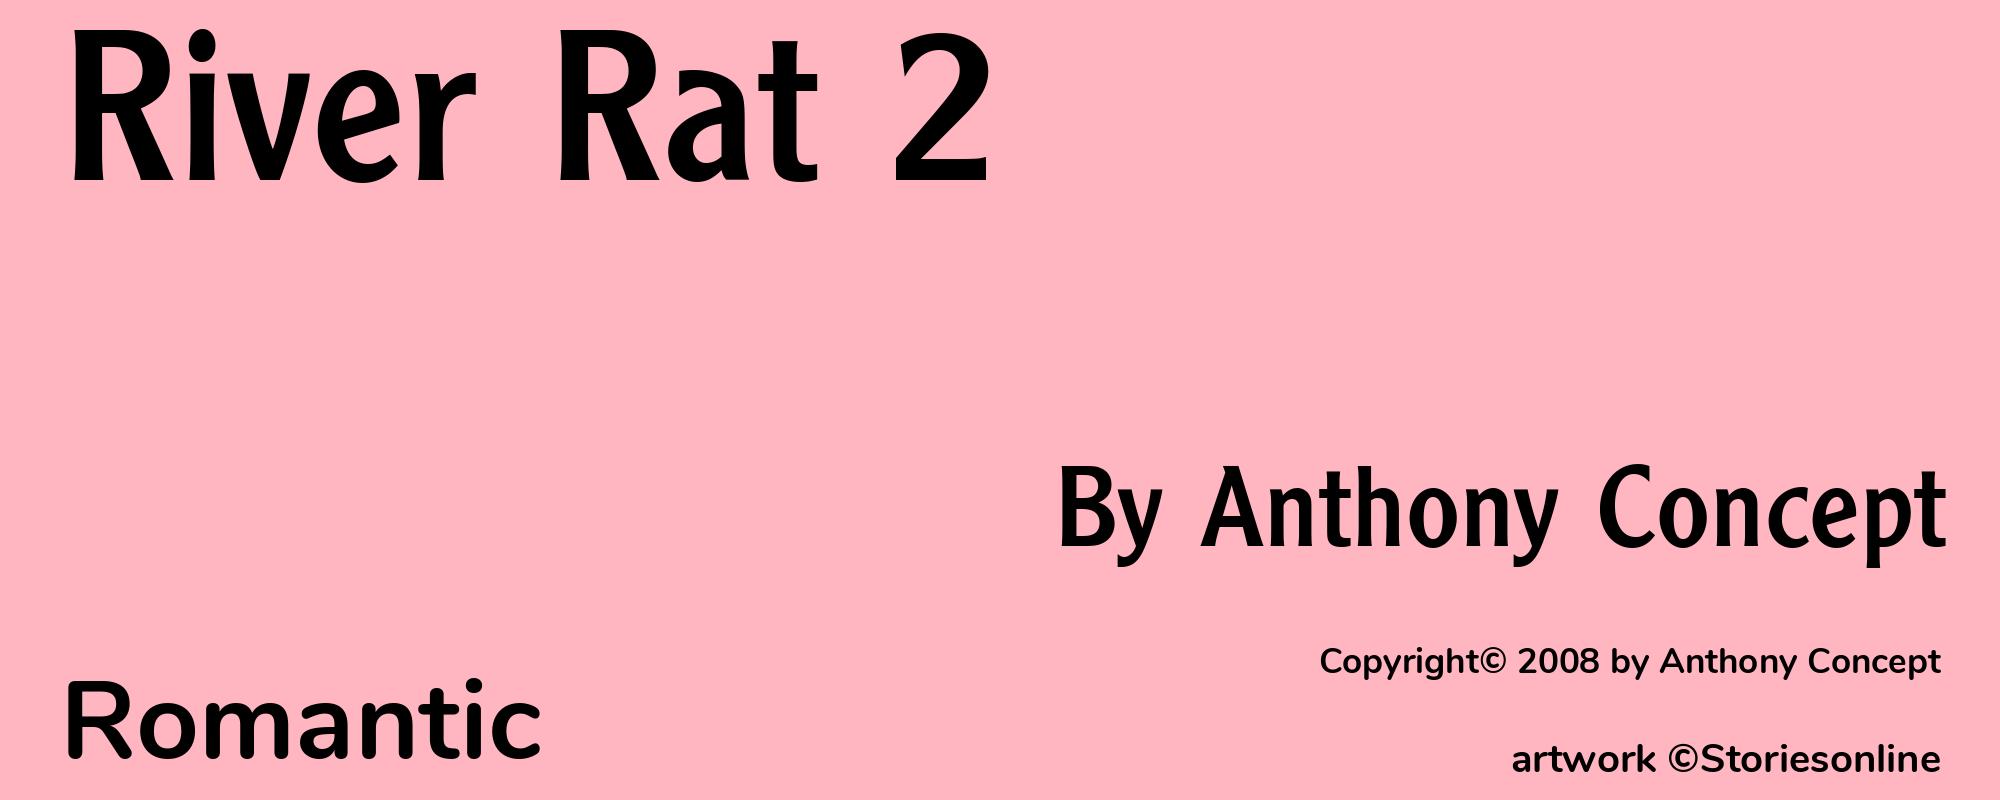 River Rat 2 - Cover